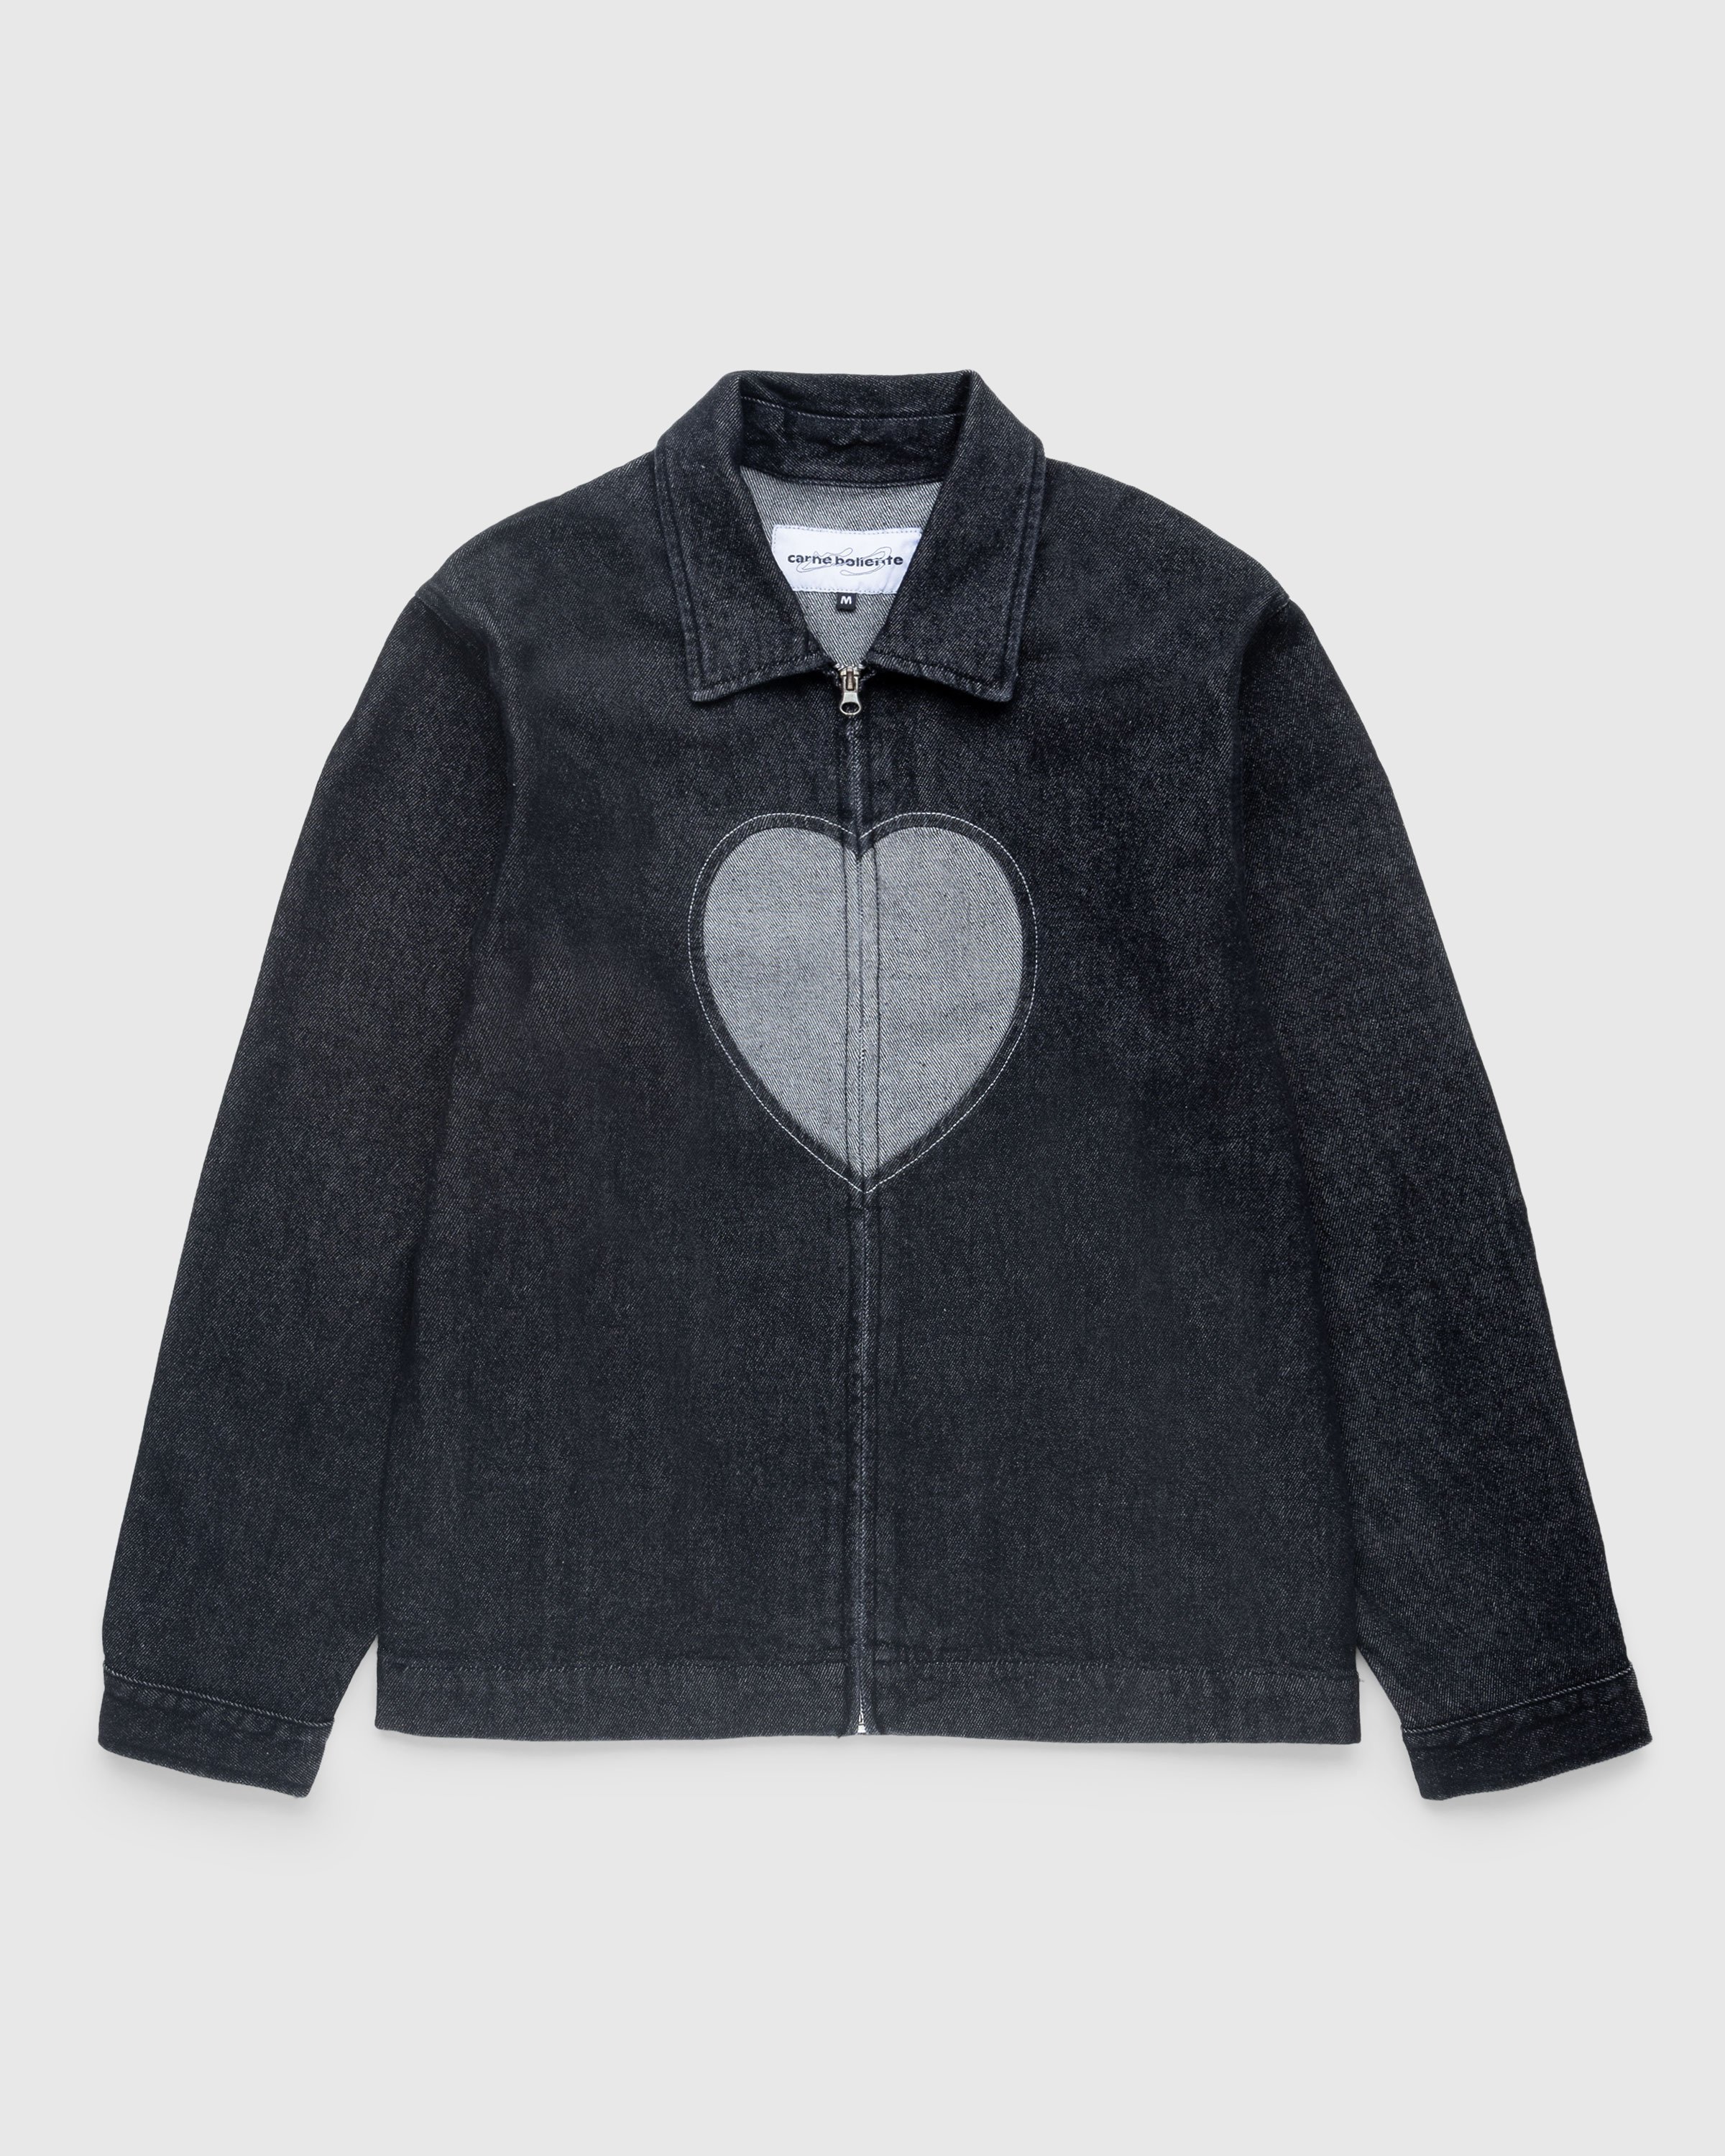 Carne Bollente - Heart Slice Jacket Washed Black - Clothing - Black - Image 1